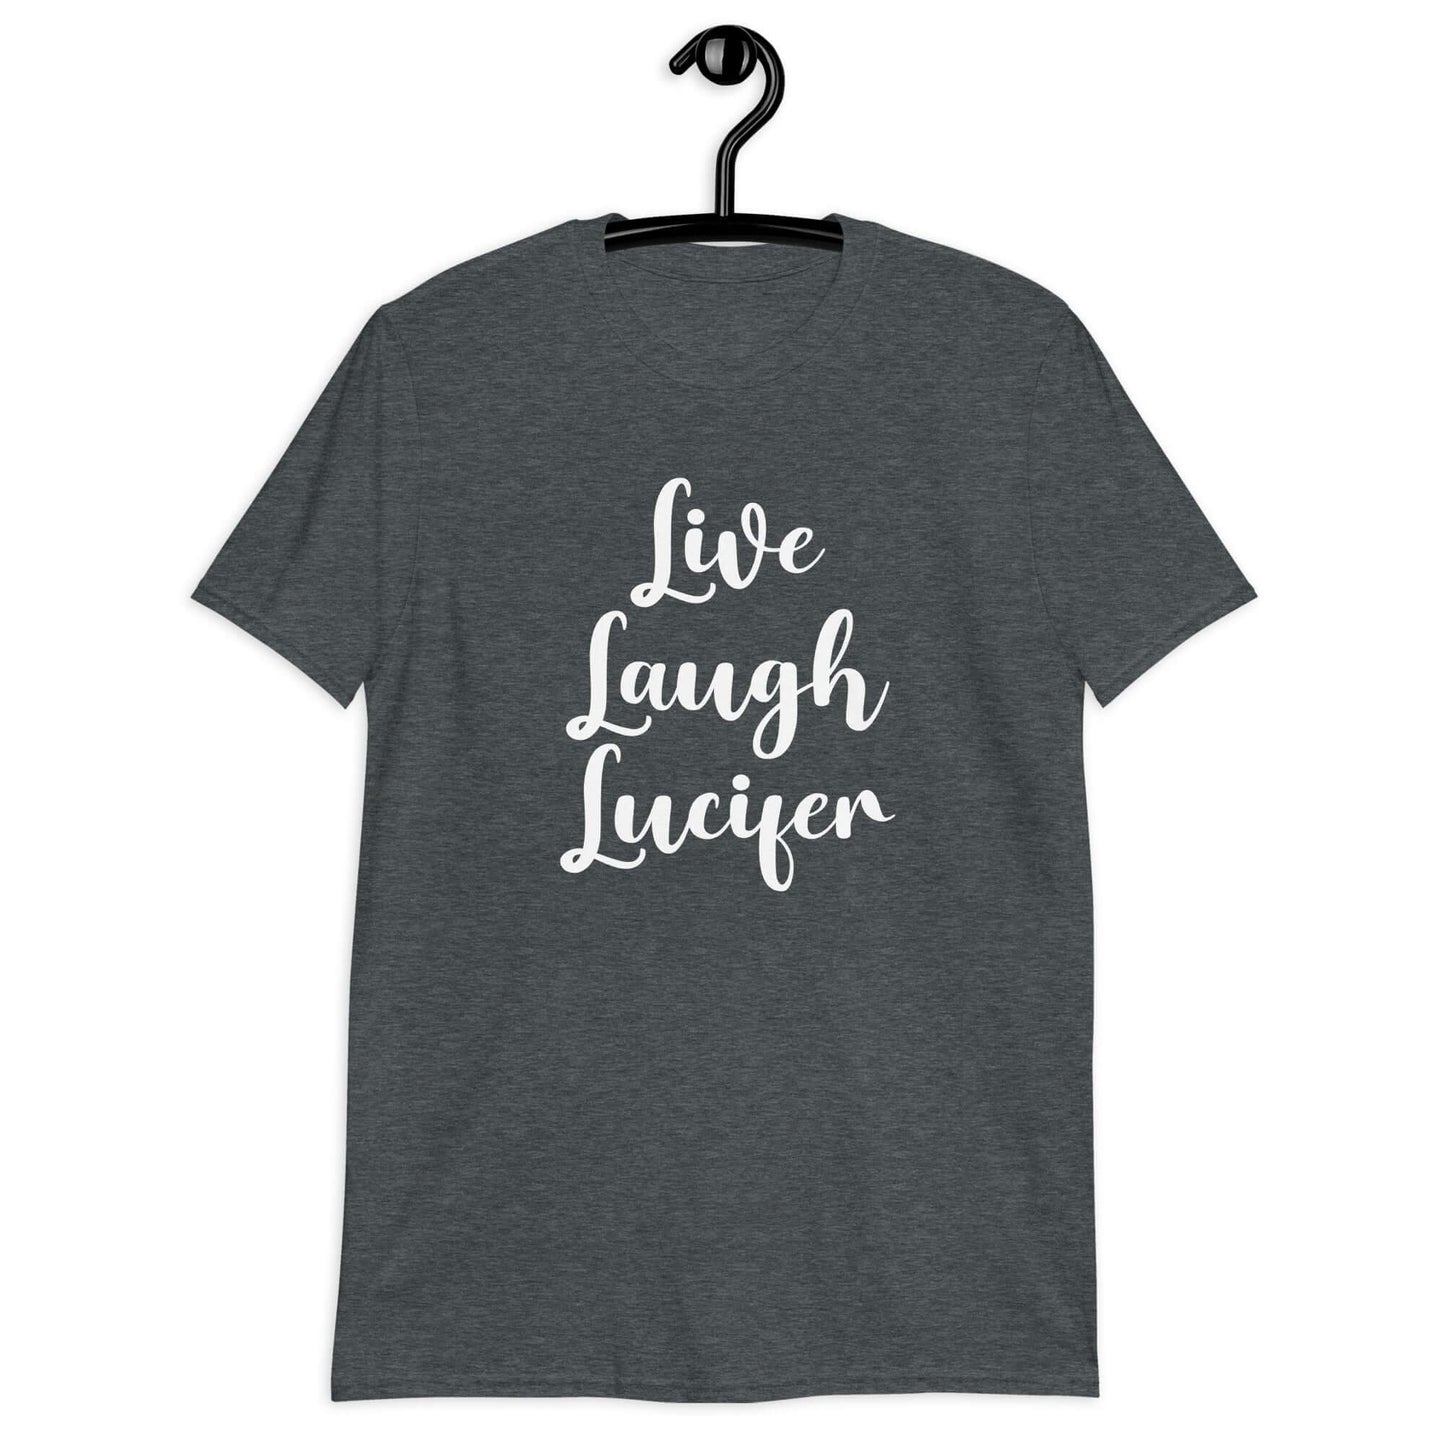 Live Laugh Lucifer parody T-Shirt